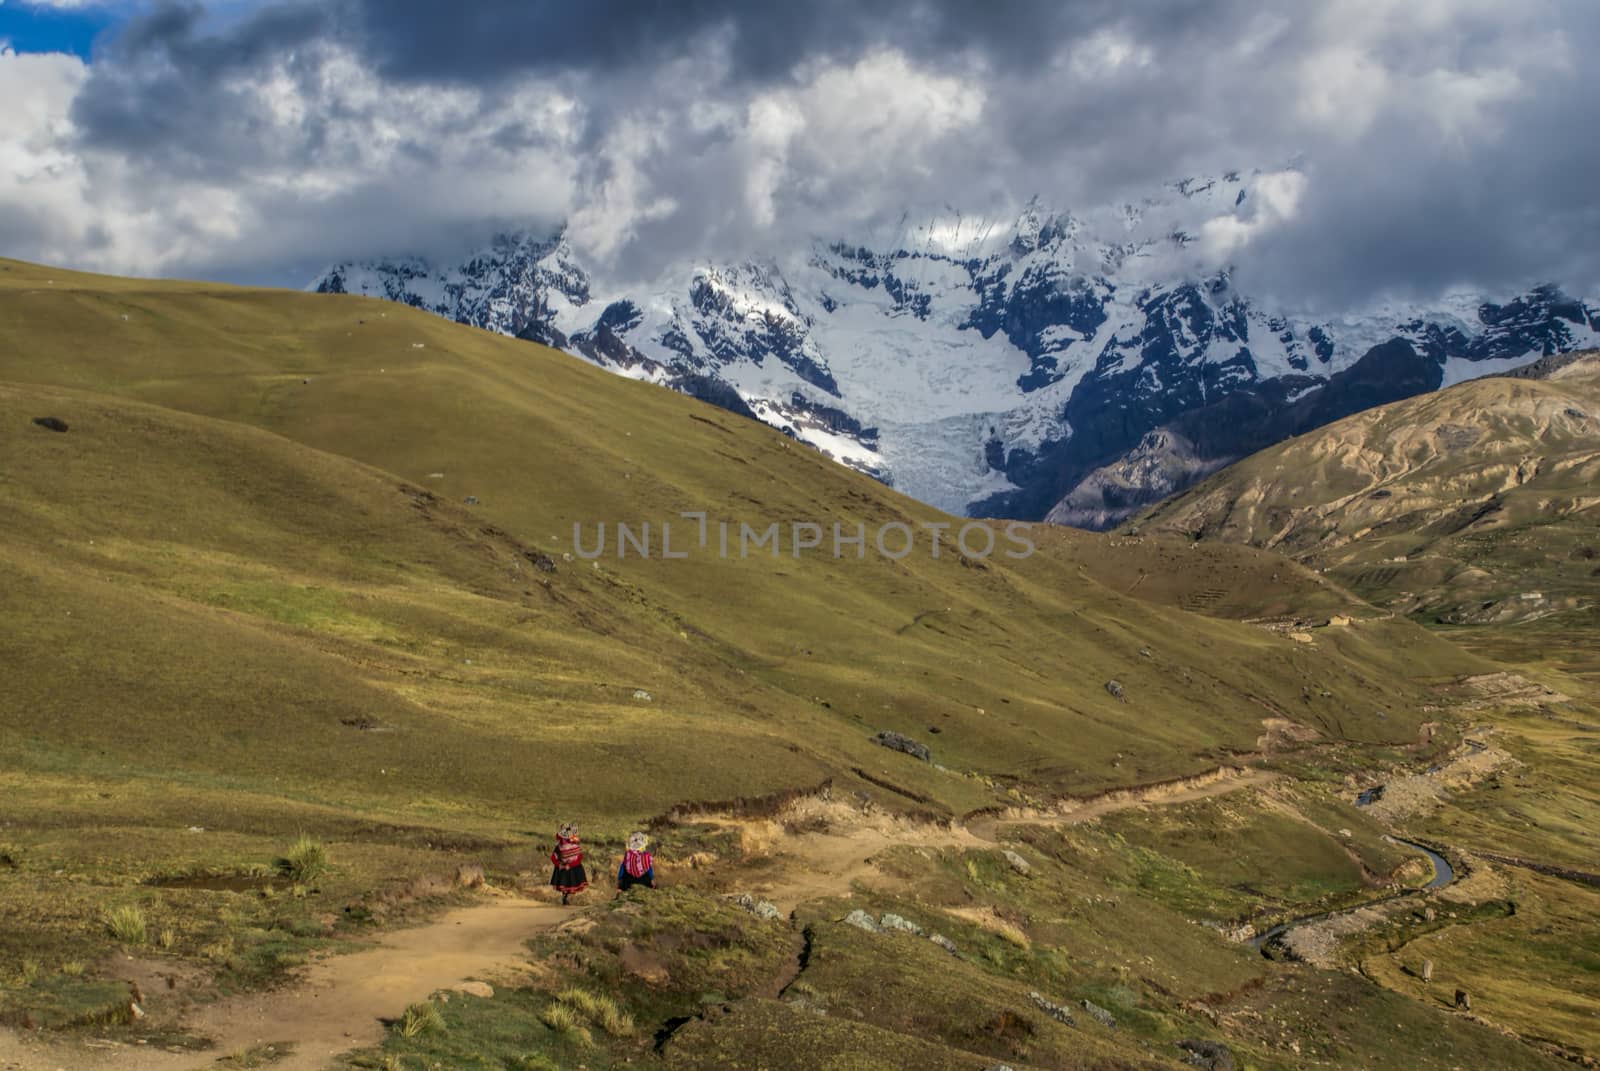 Two Peruvian women walking along a path in Peruvian Andes